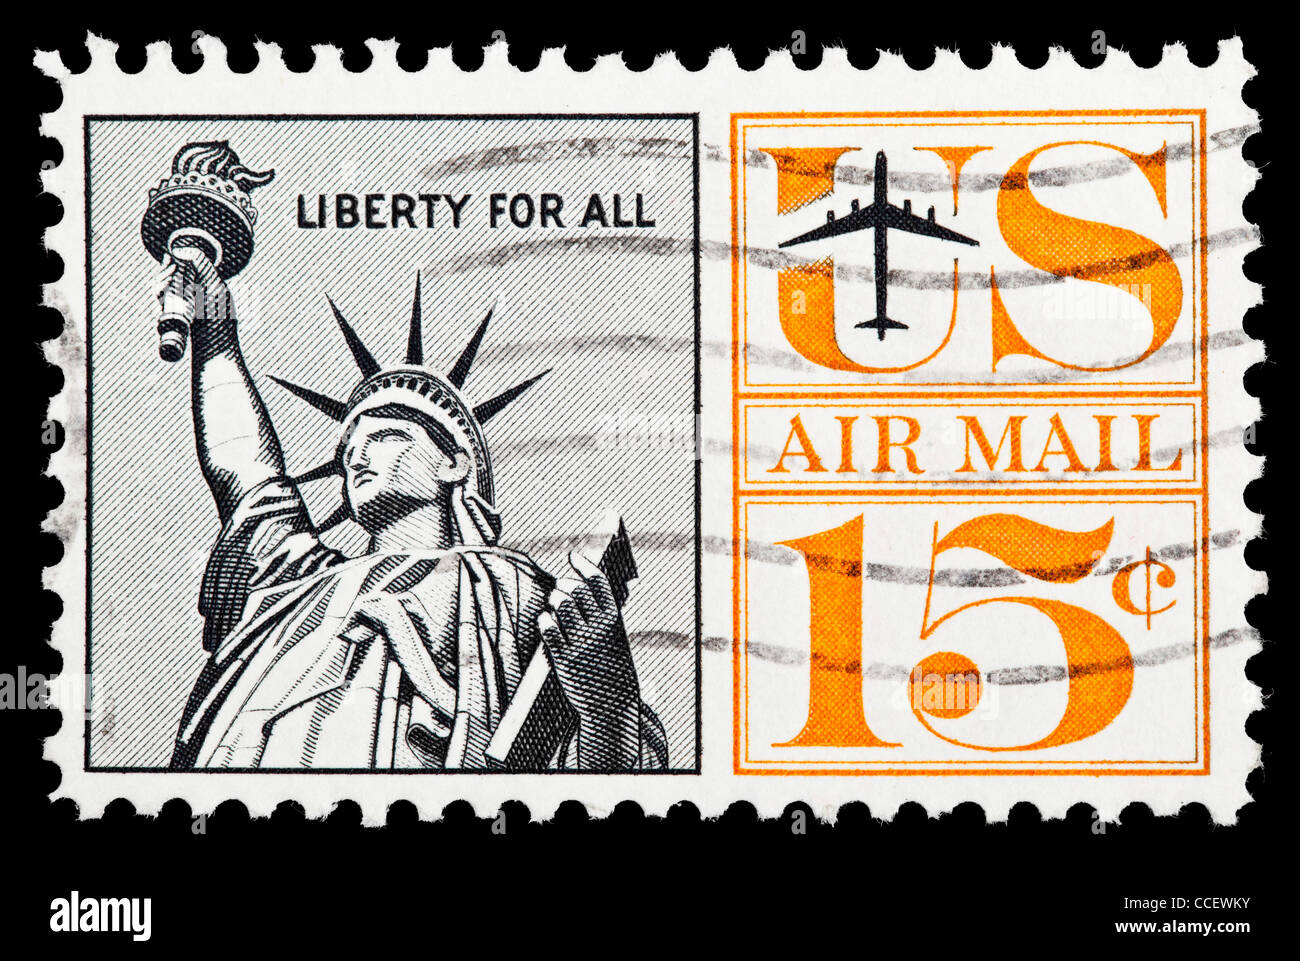 Sello: correo aéreo de los Estados Unidos, la Estatua de la Libertad, "Libertad para todos", el 15% de 1961, estampado Foto de stock